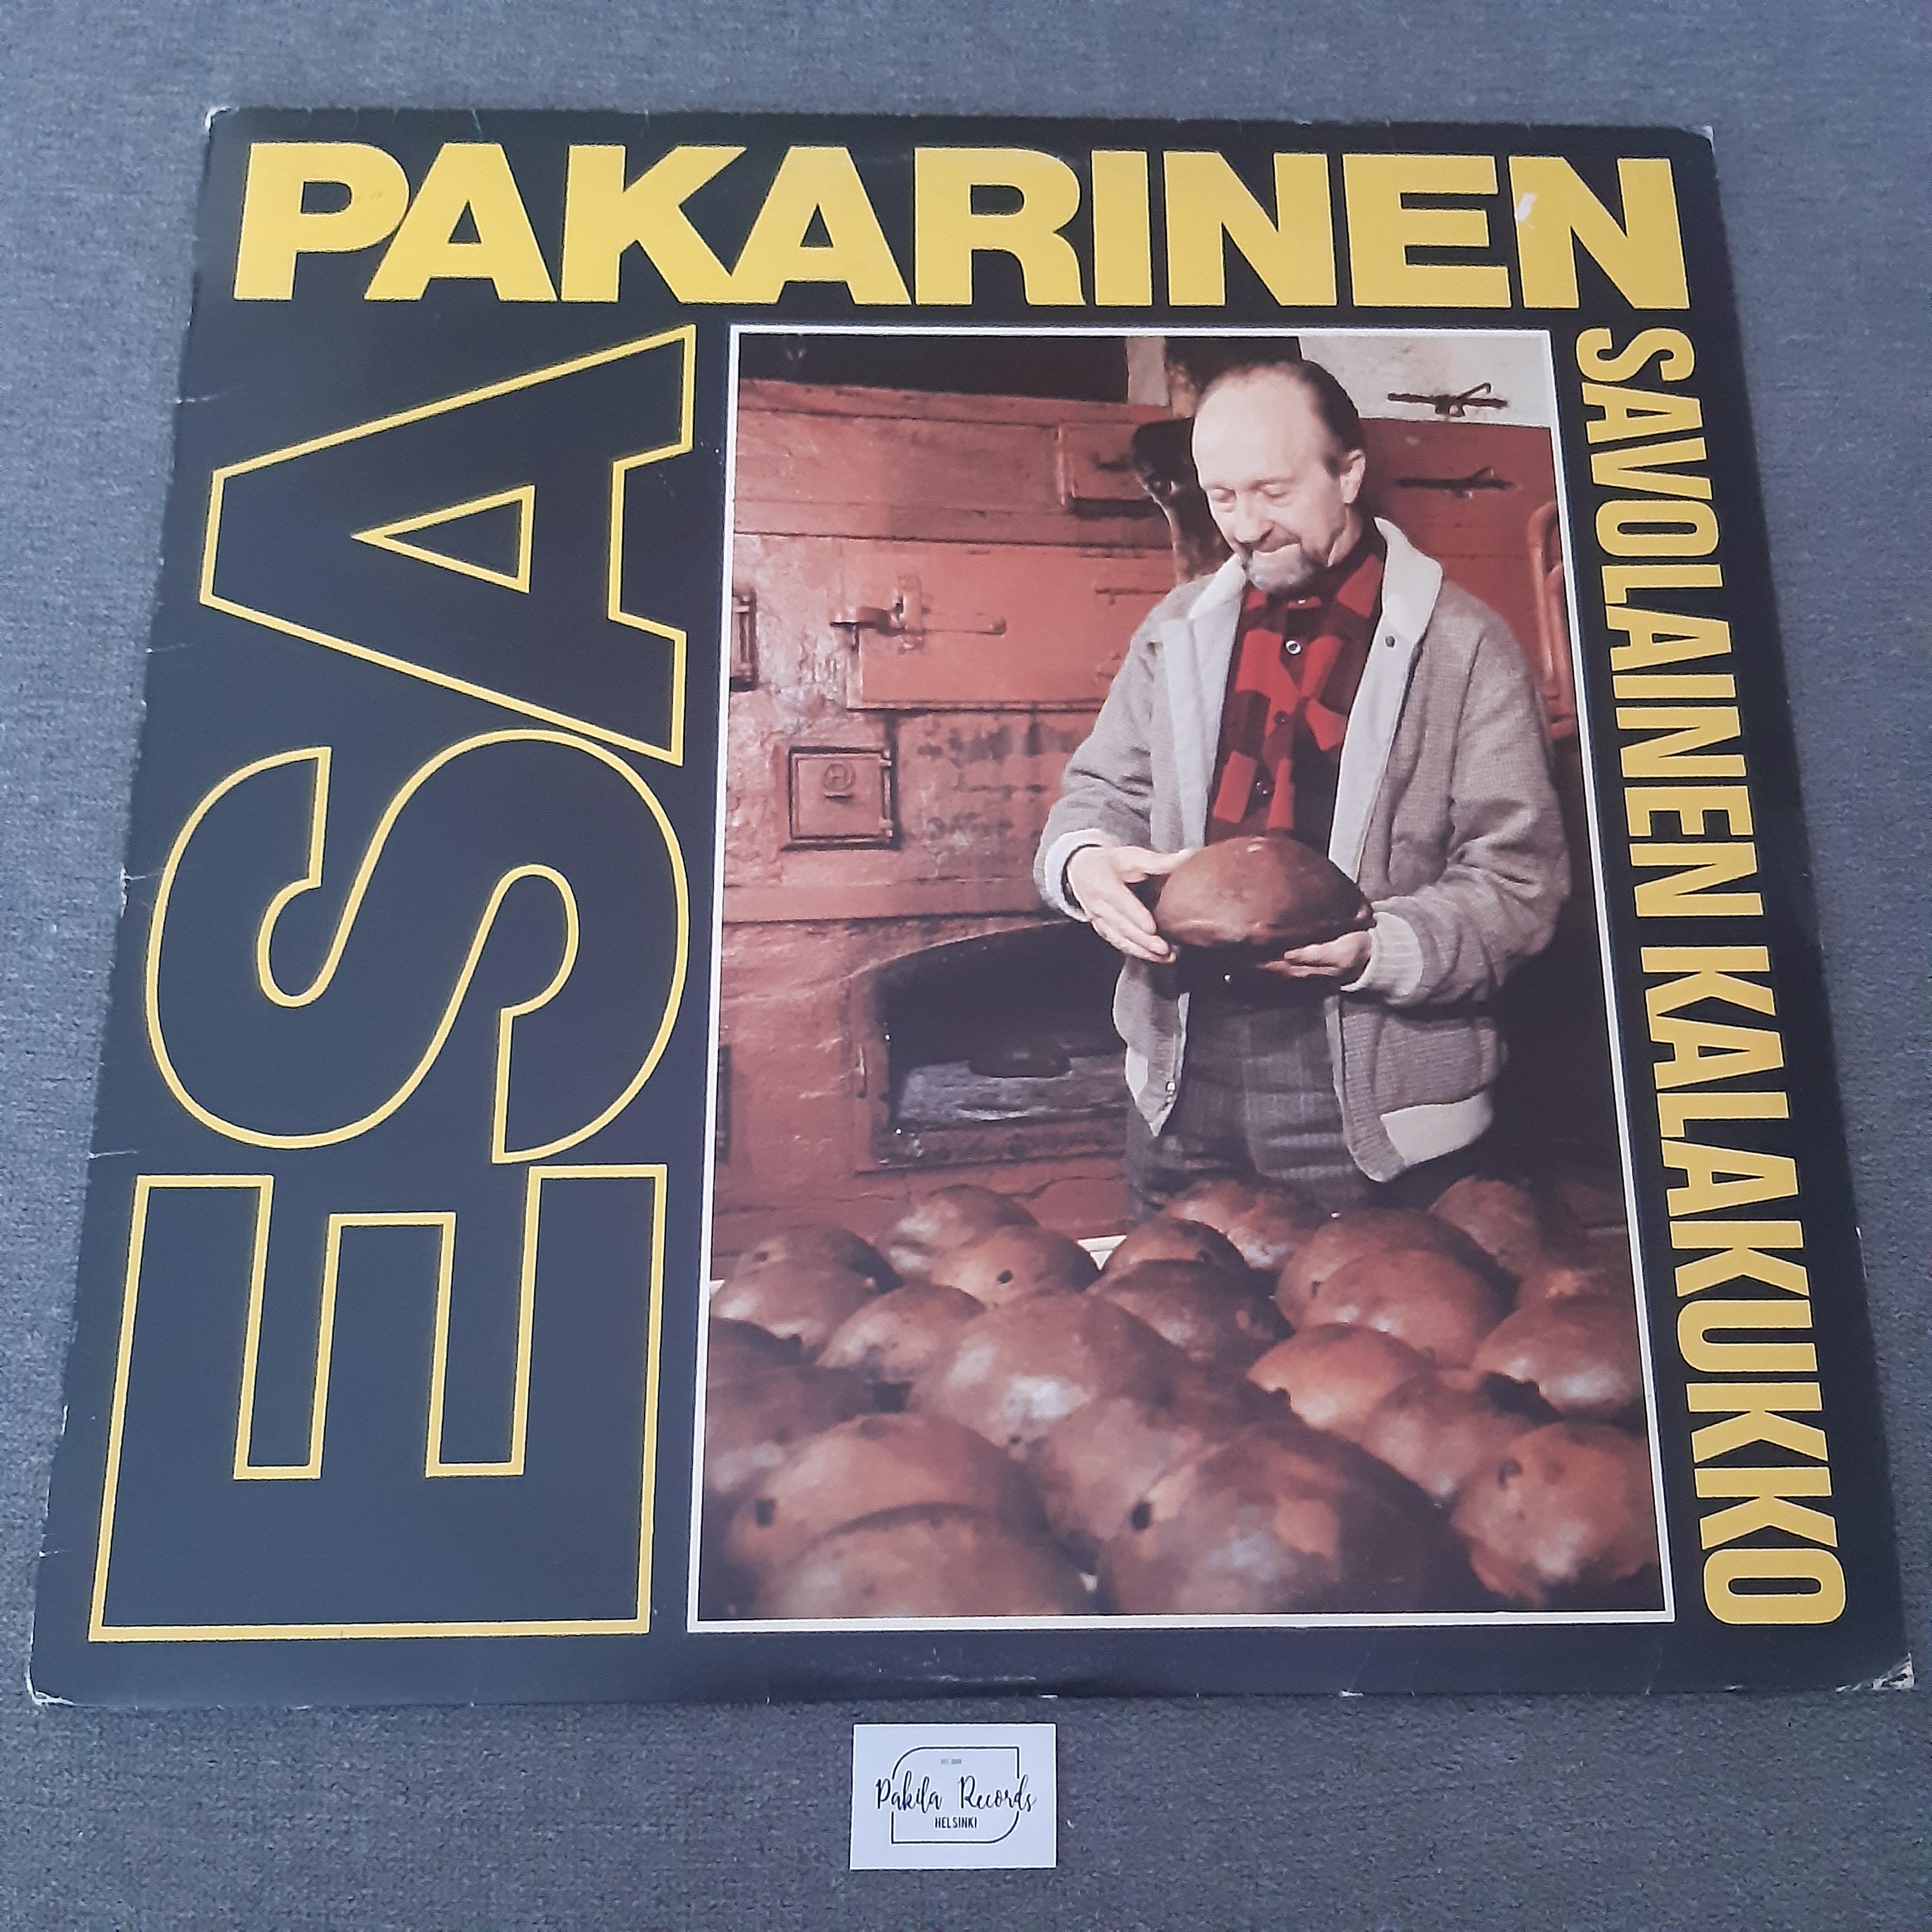 Esa Pakarinen - Savolainen Kalakukko - LP (käytetty)